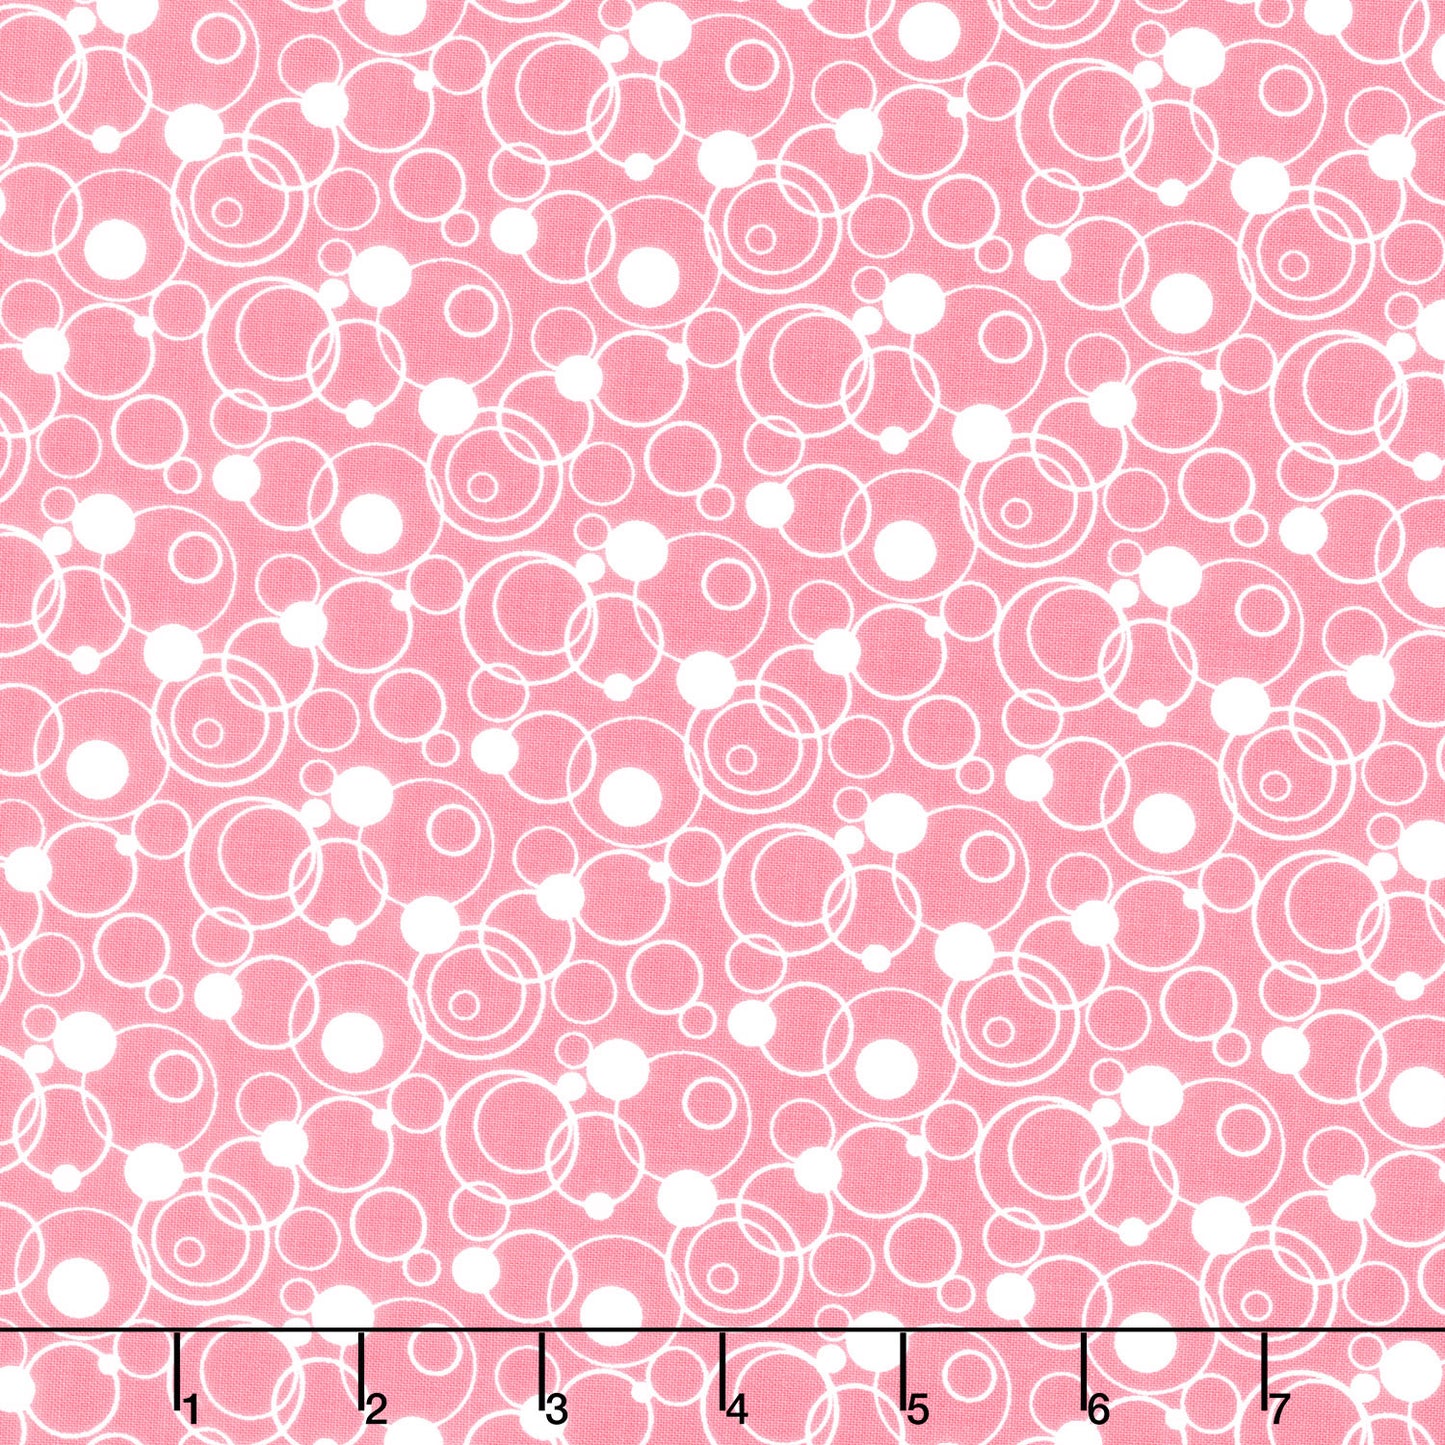 Effervescence (Riley Blake) - Circles Pink Yardage Primary Image